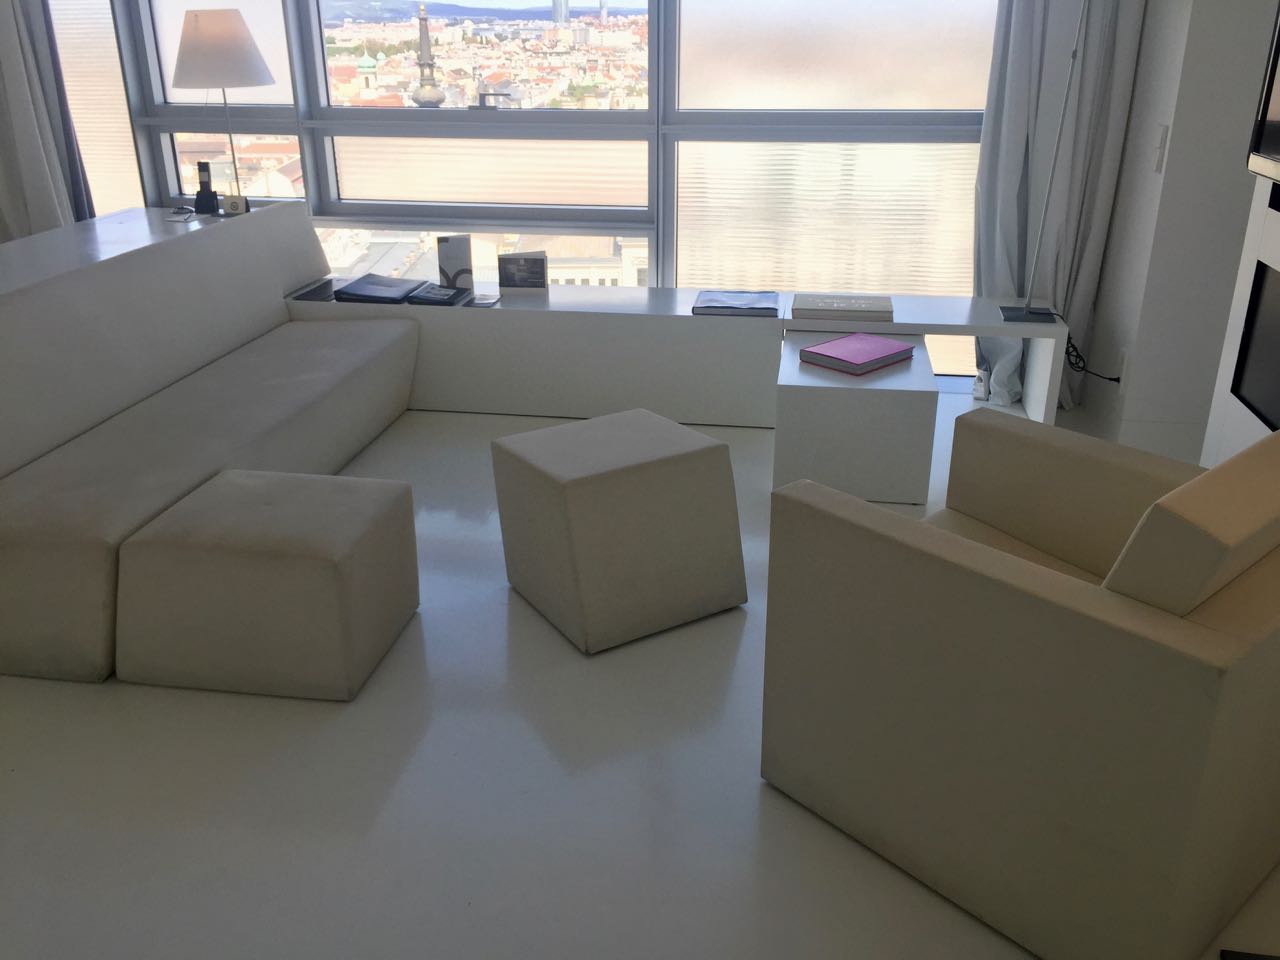 Sofitel Vienna | Living Room Area.jpg